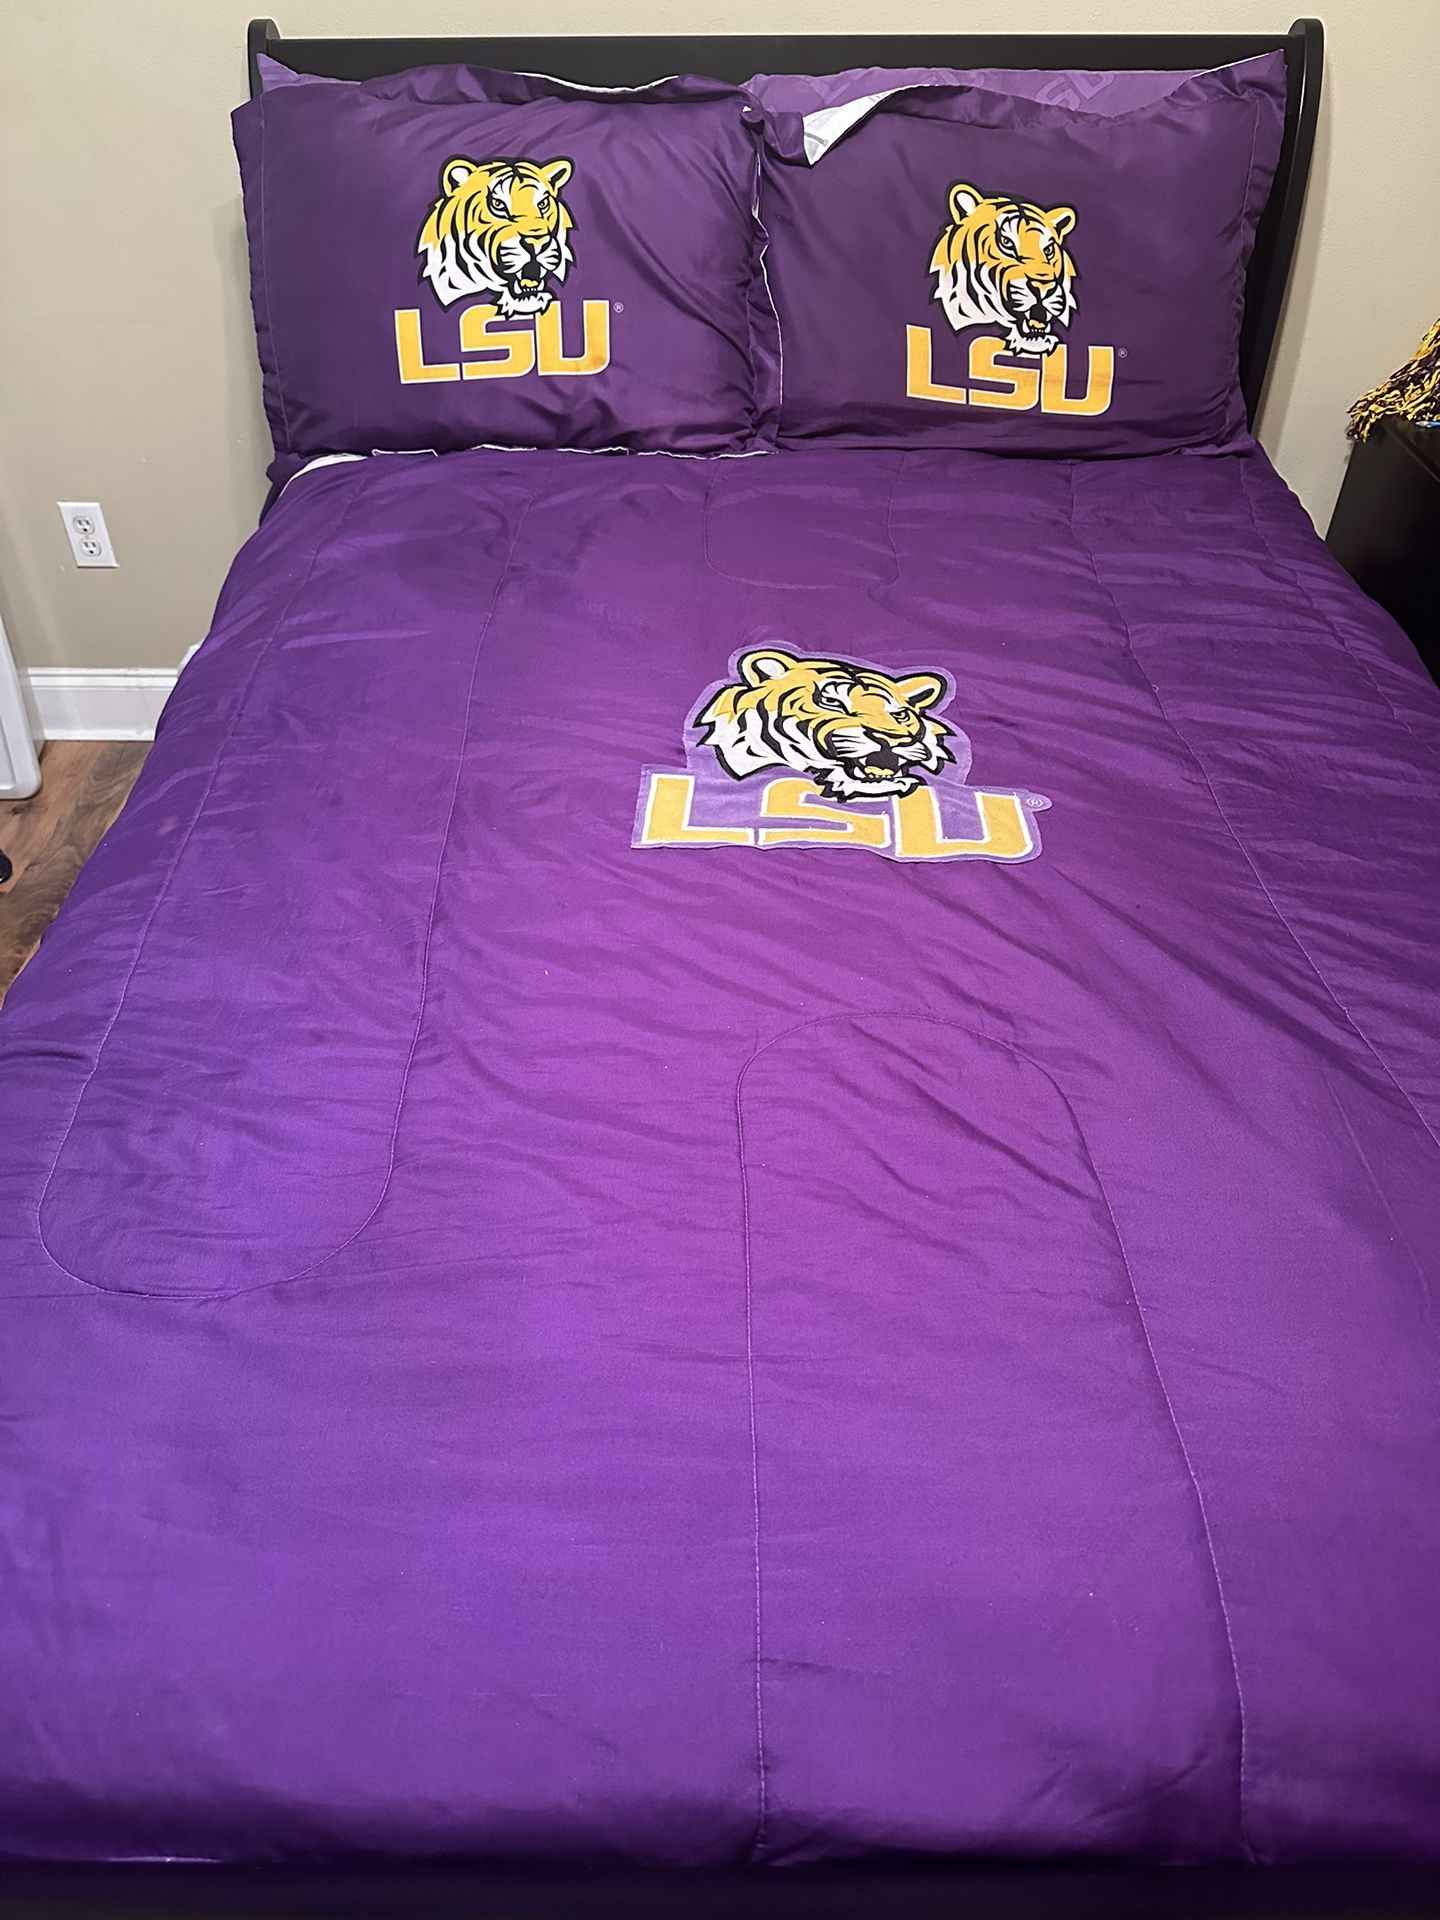 LSU bedding Set- Full Size